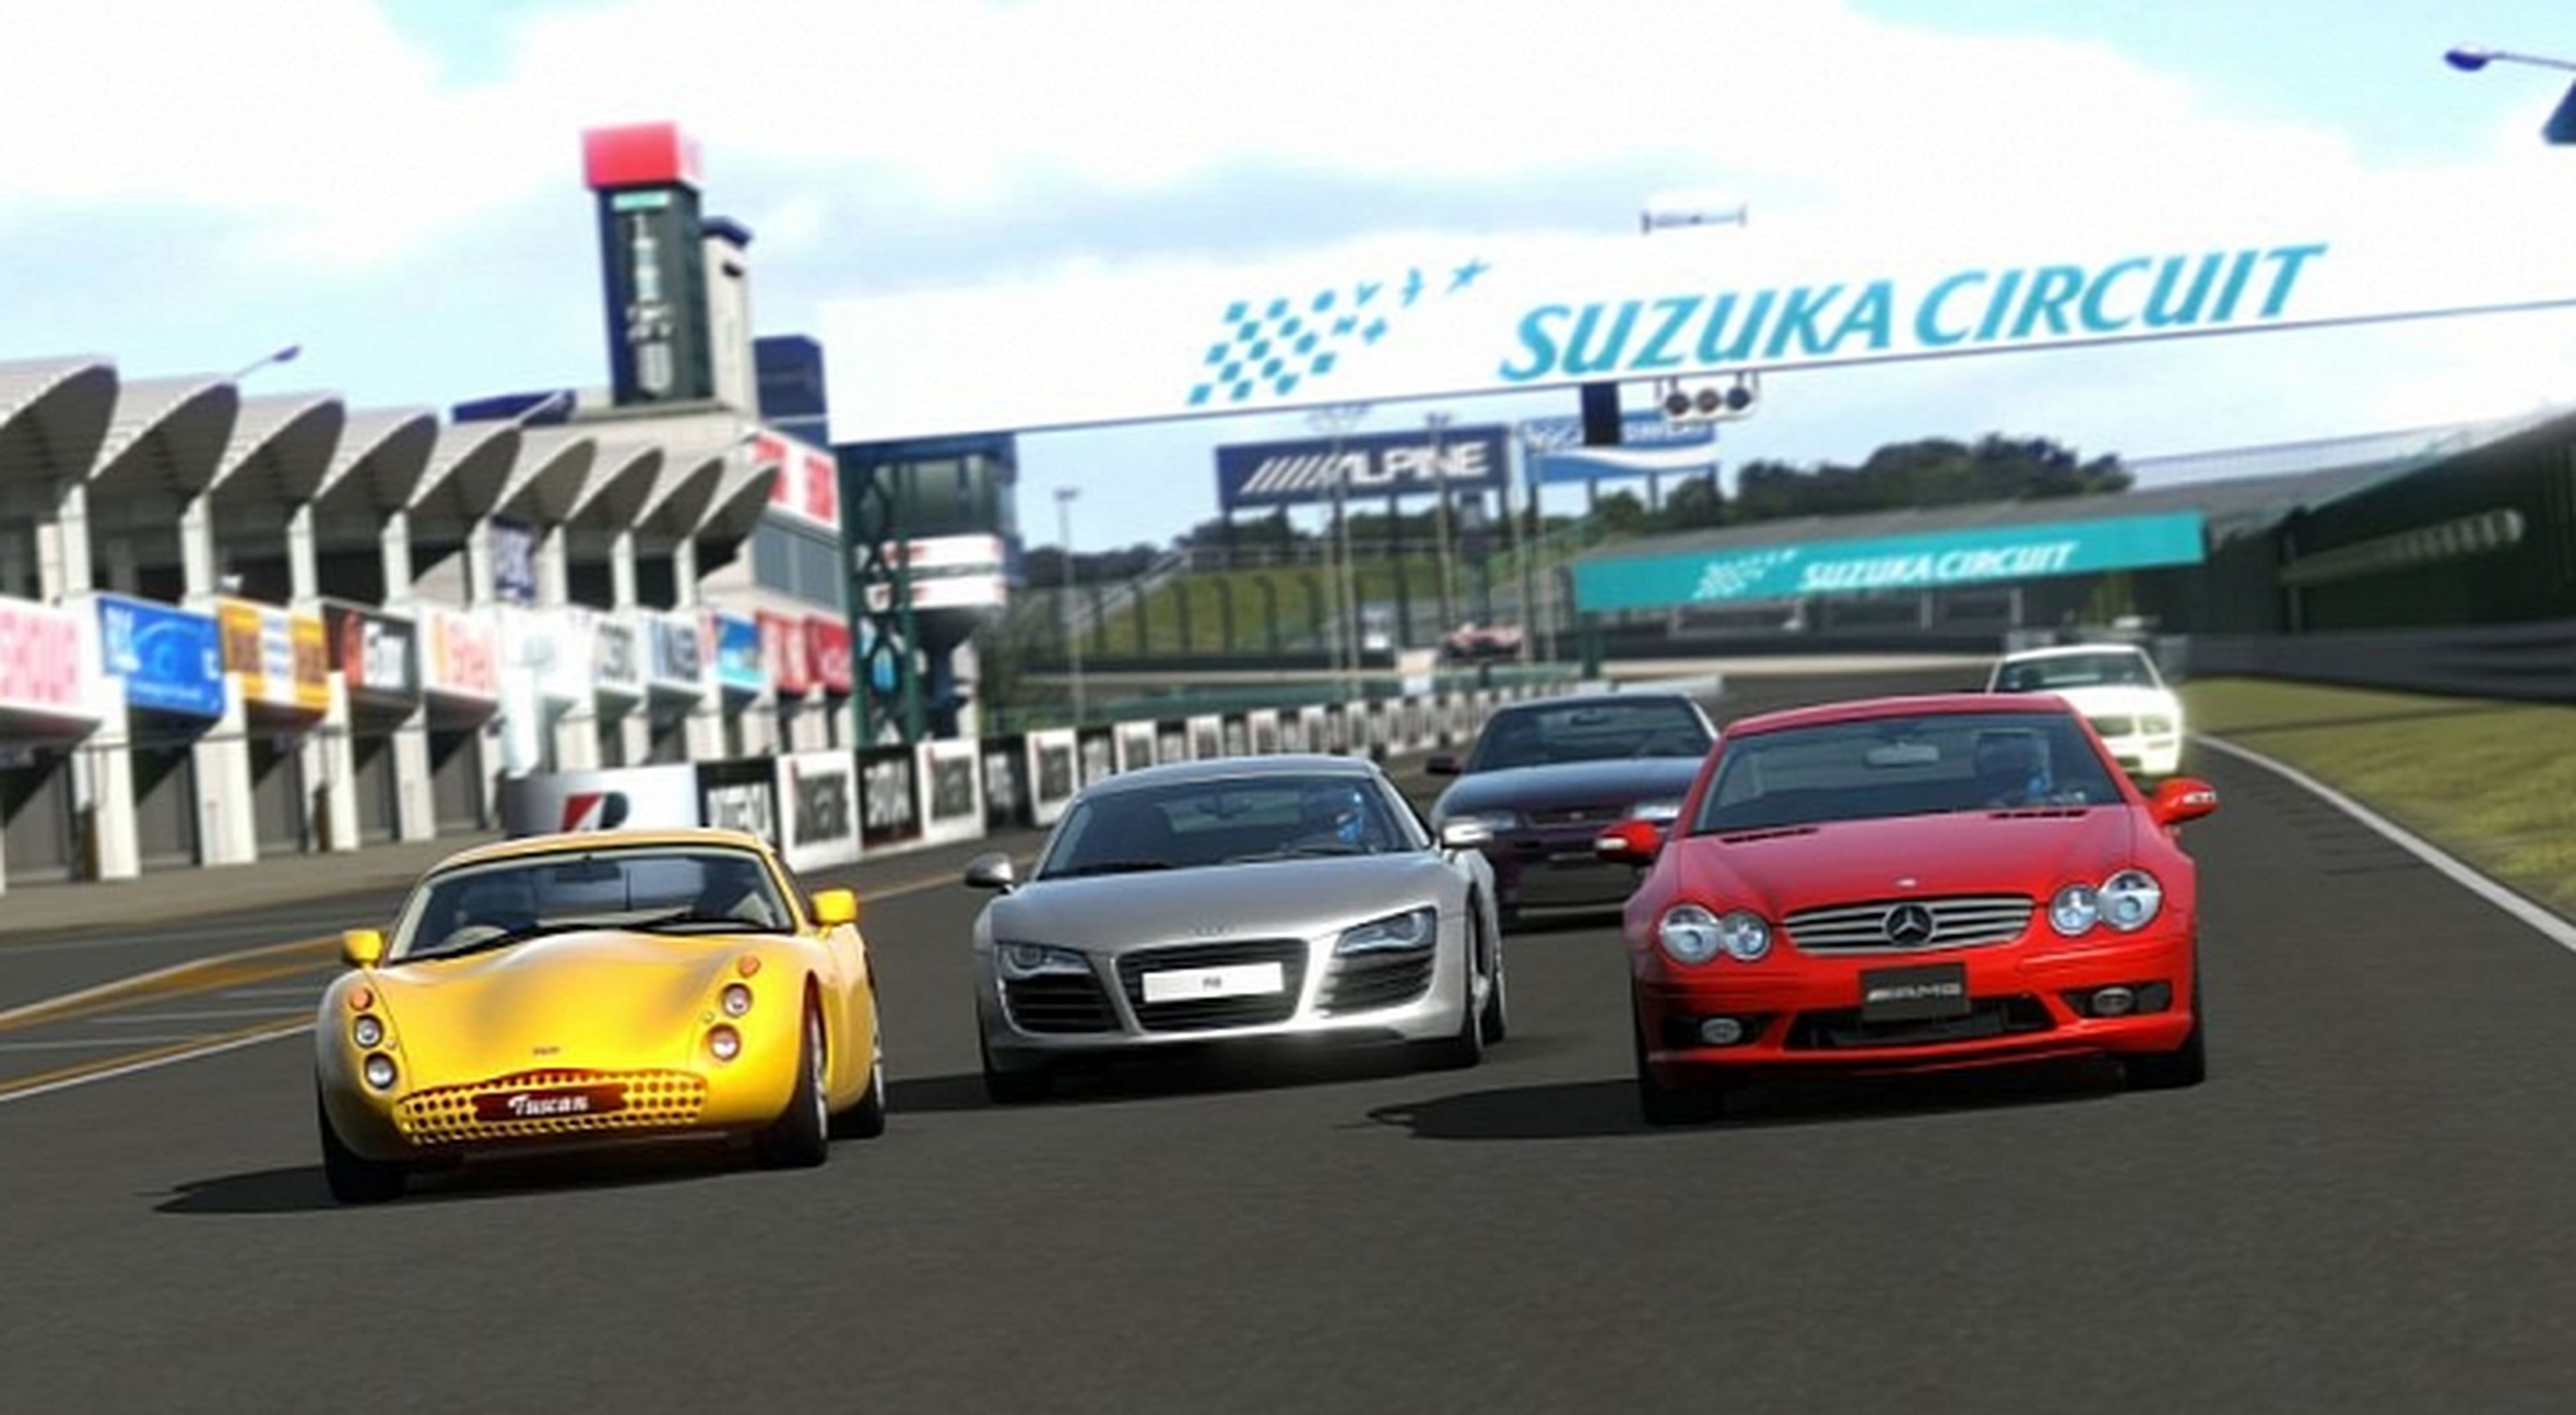 La mejora de audio de Gran Turismo 6 podría llegar vía DLC